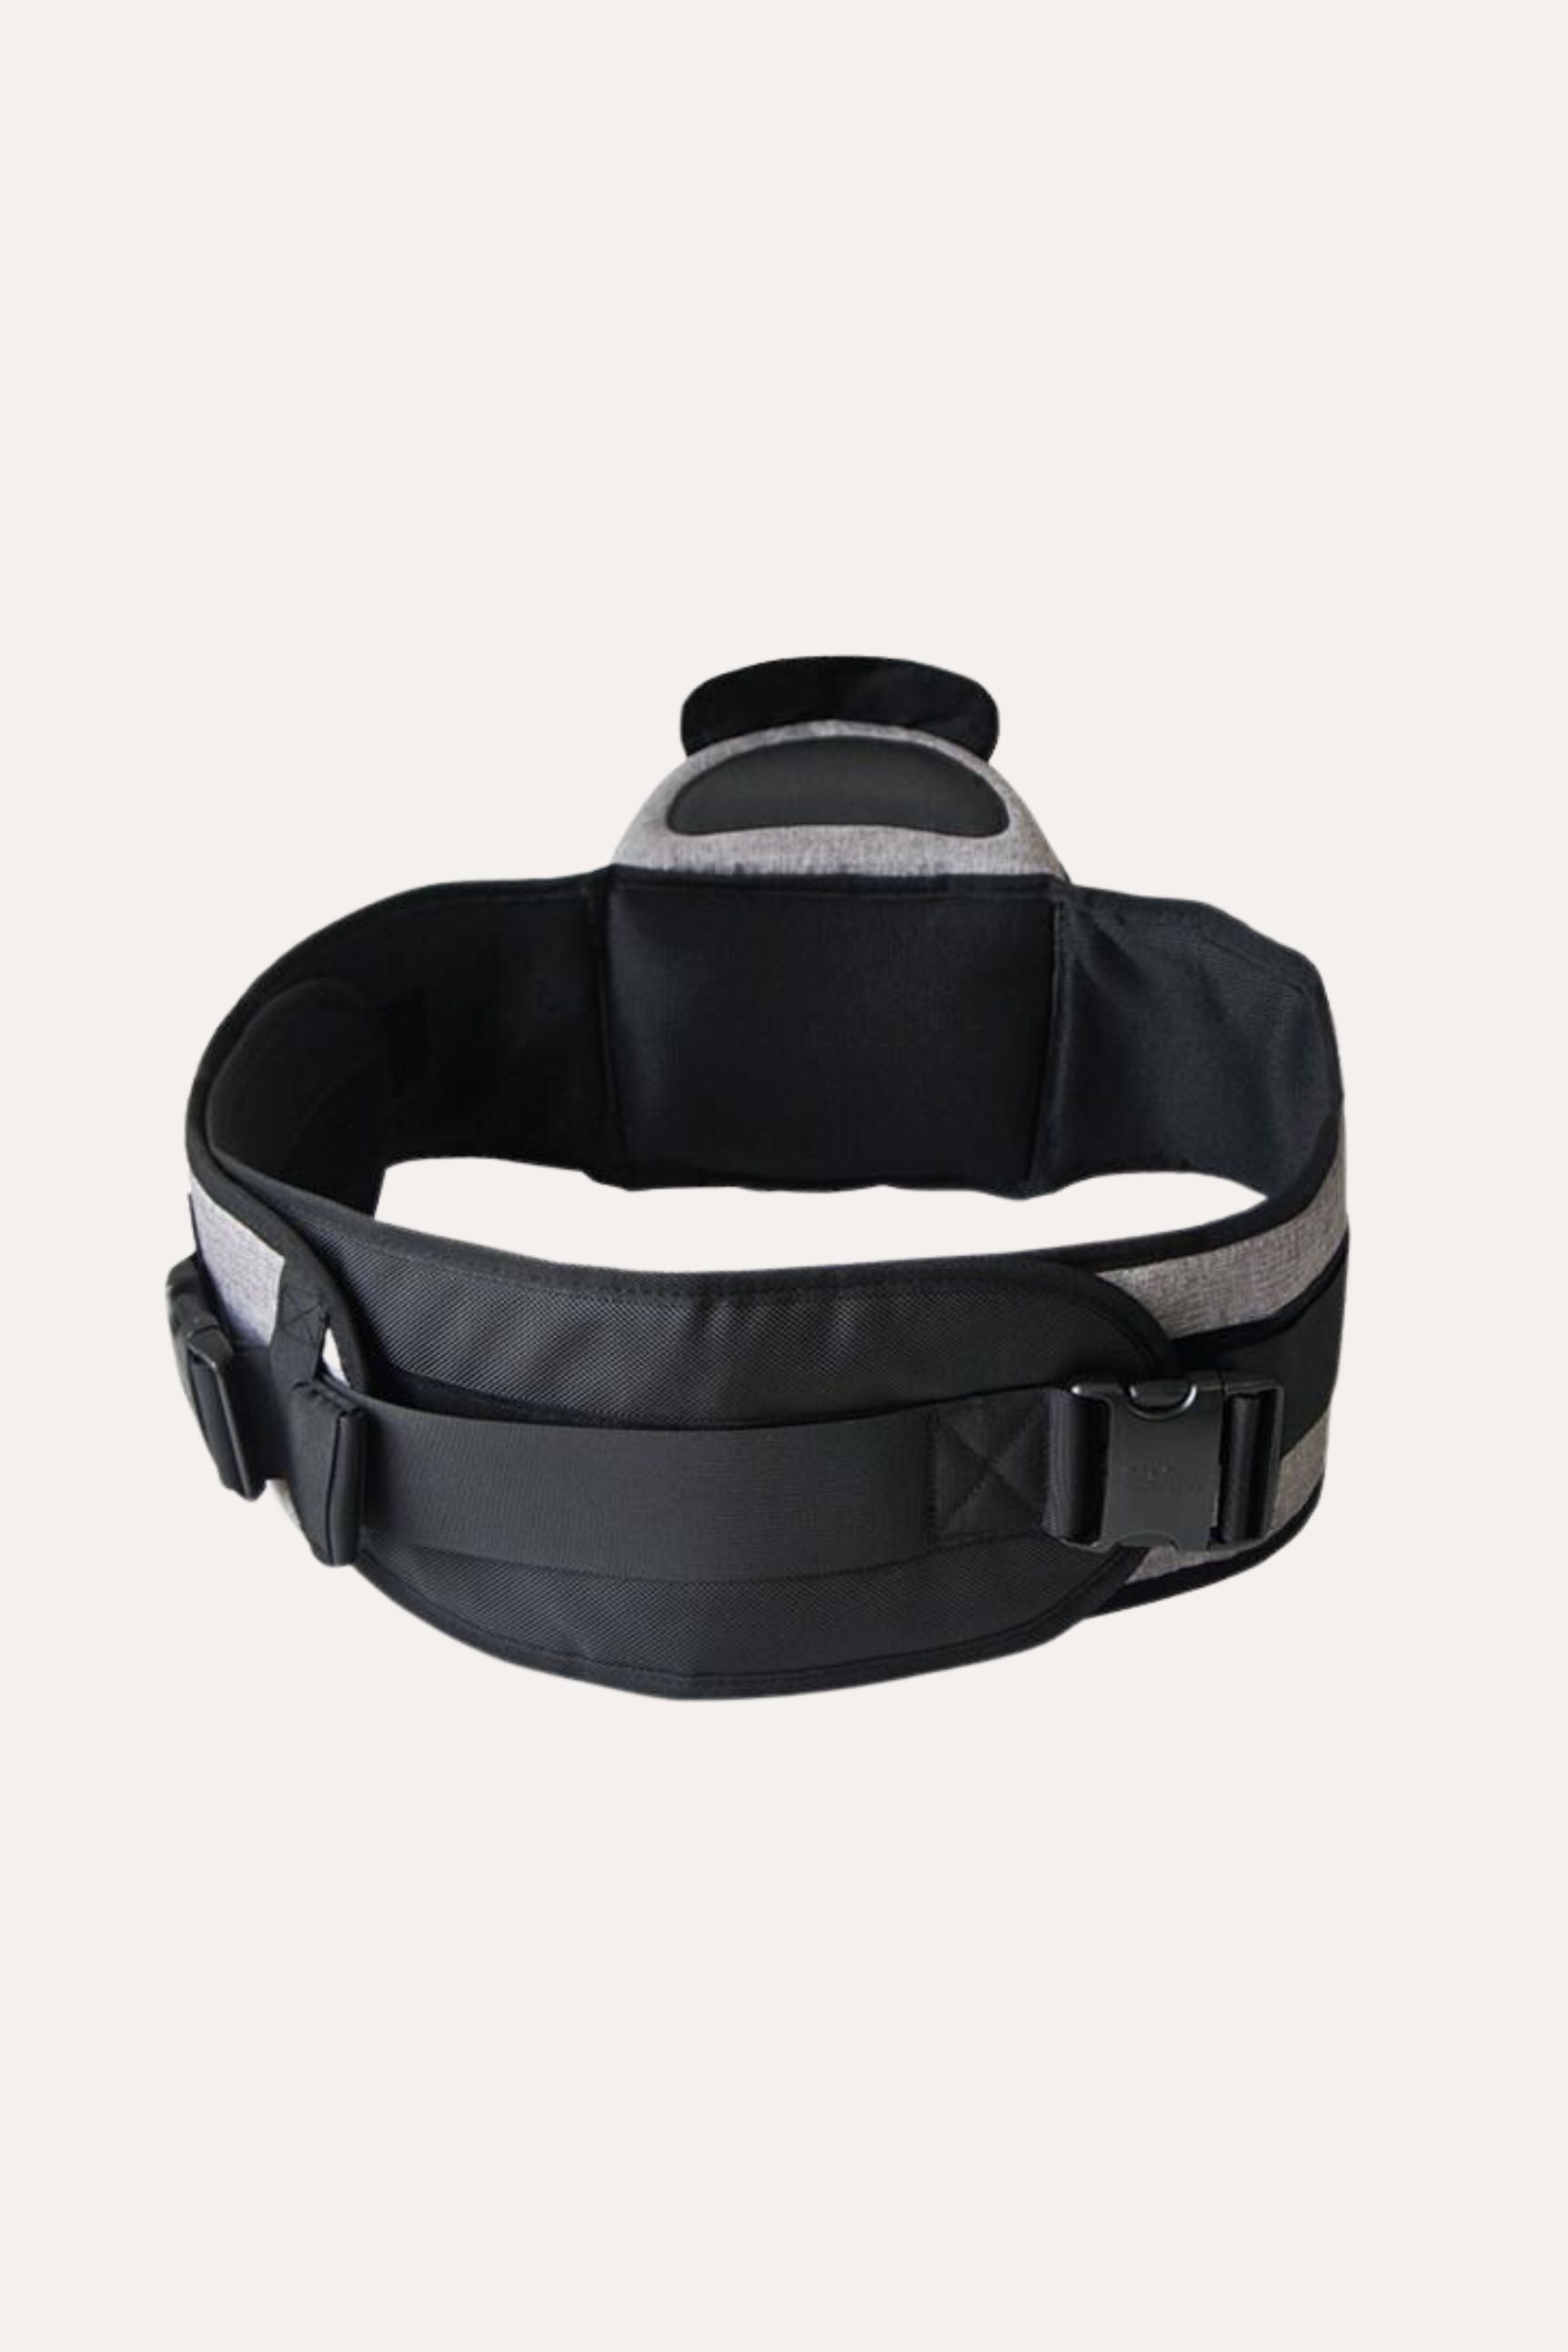 Bag Accessory Bag Belt Fanny Pack Extender Strap Waist Bag